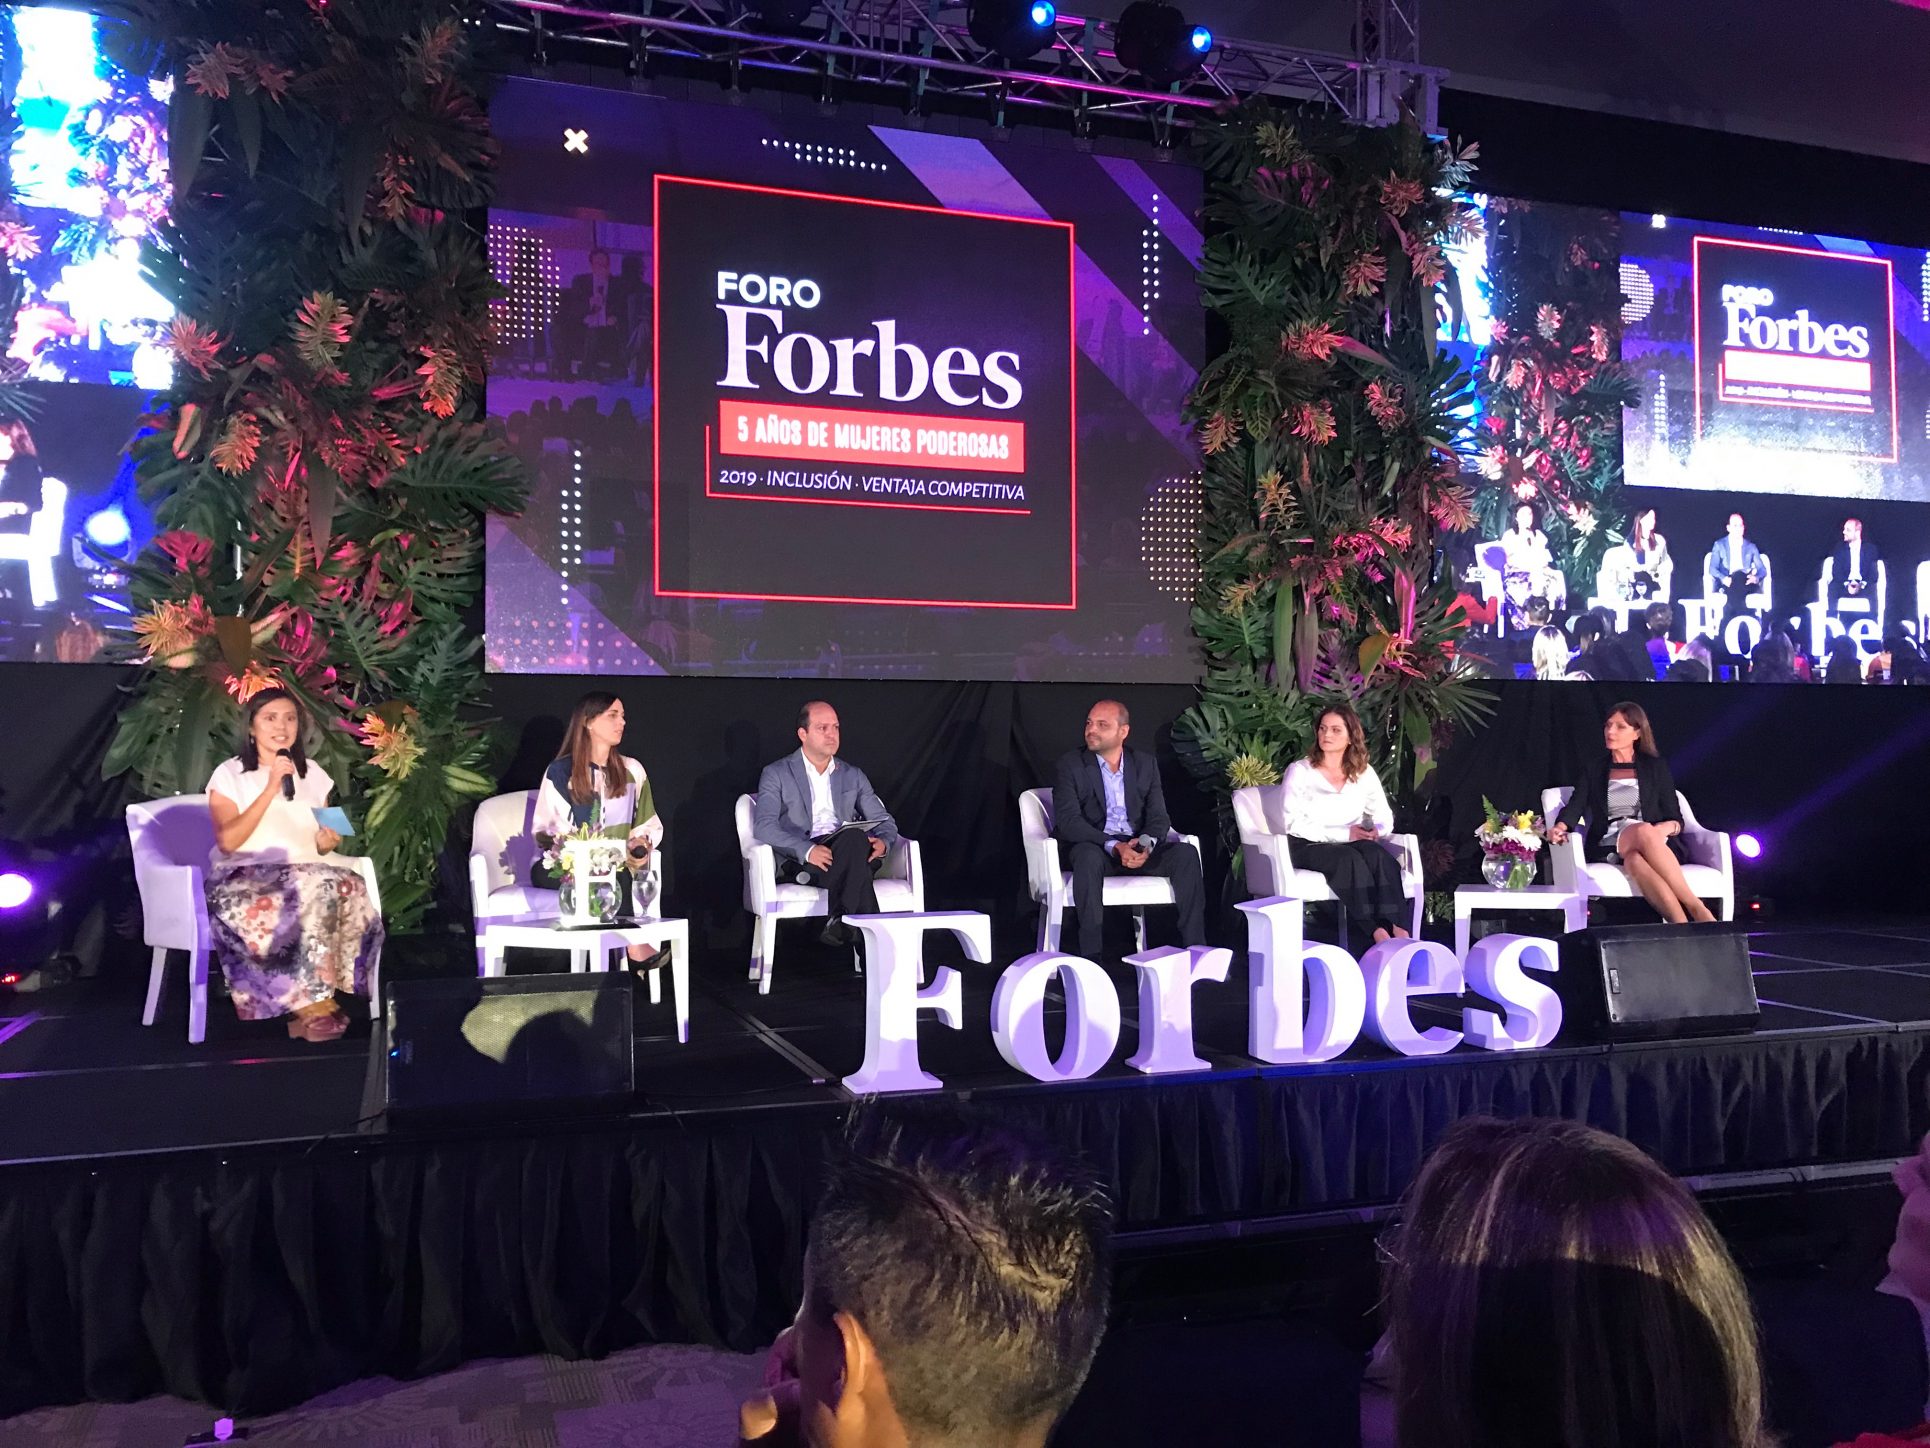 Foro Forbes “5 años de mujeres poderosas” resaltó las brechas de género que persisten en Centroamérica